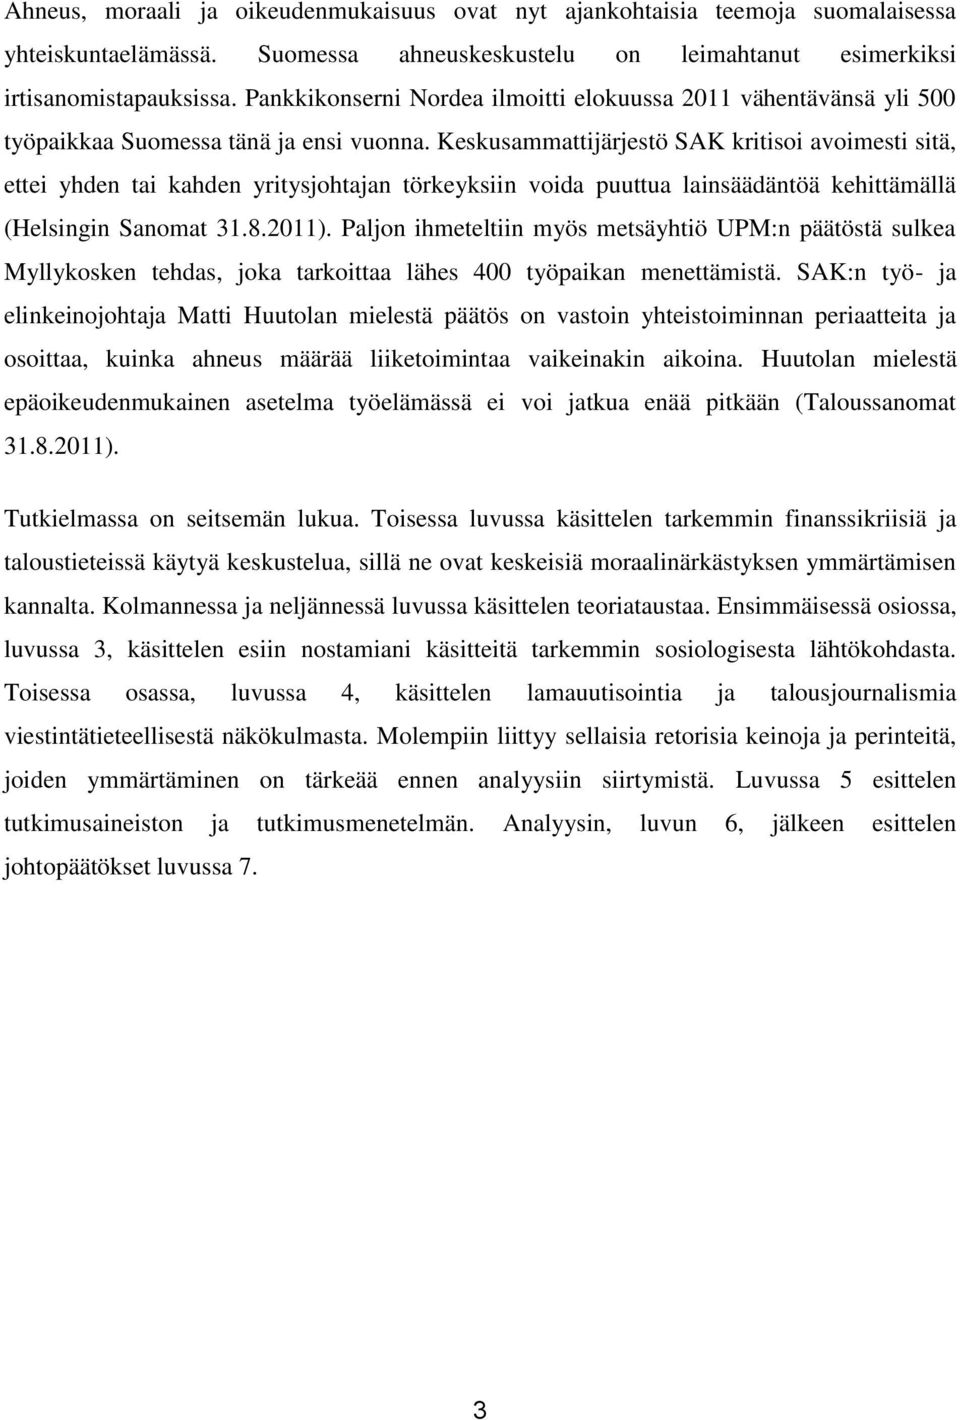 Keskusammattijärjestö SAK kritisoi avoimesti sitä, ettei yhden tai kahden yritysjohtajan törkeyksiin voida puuttua lainsäädäntöä kehittämällä (Helsingin Sanomat 31.8.2011).